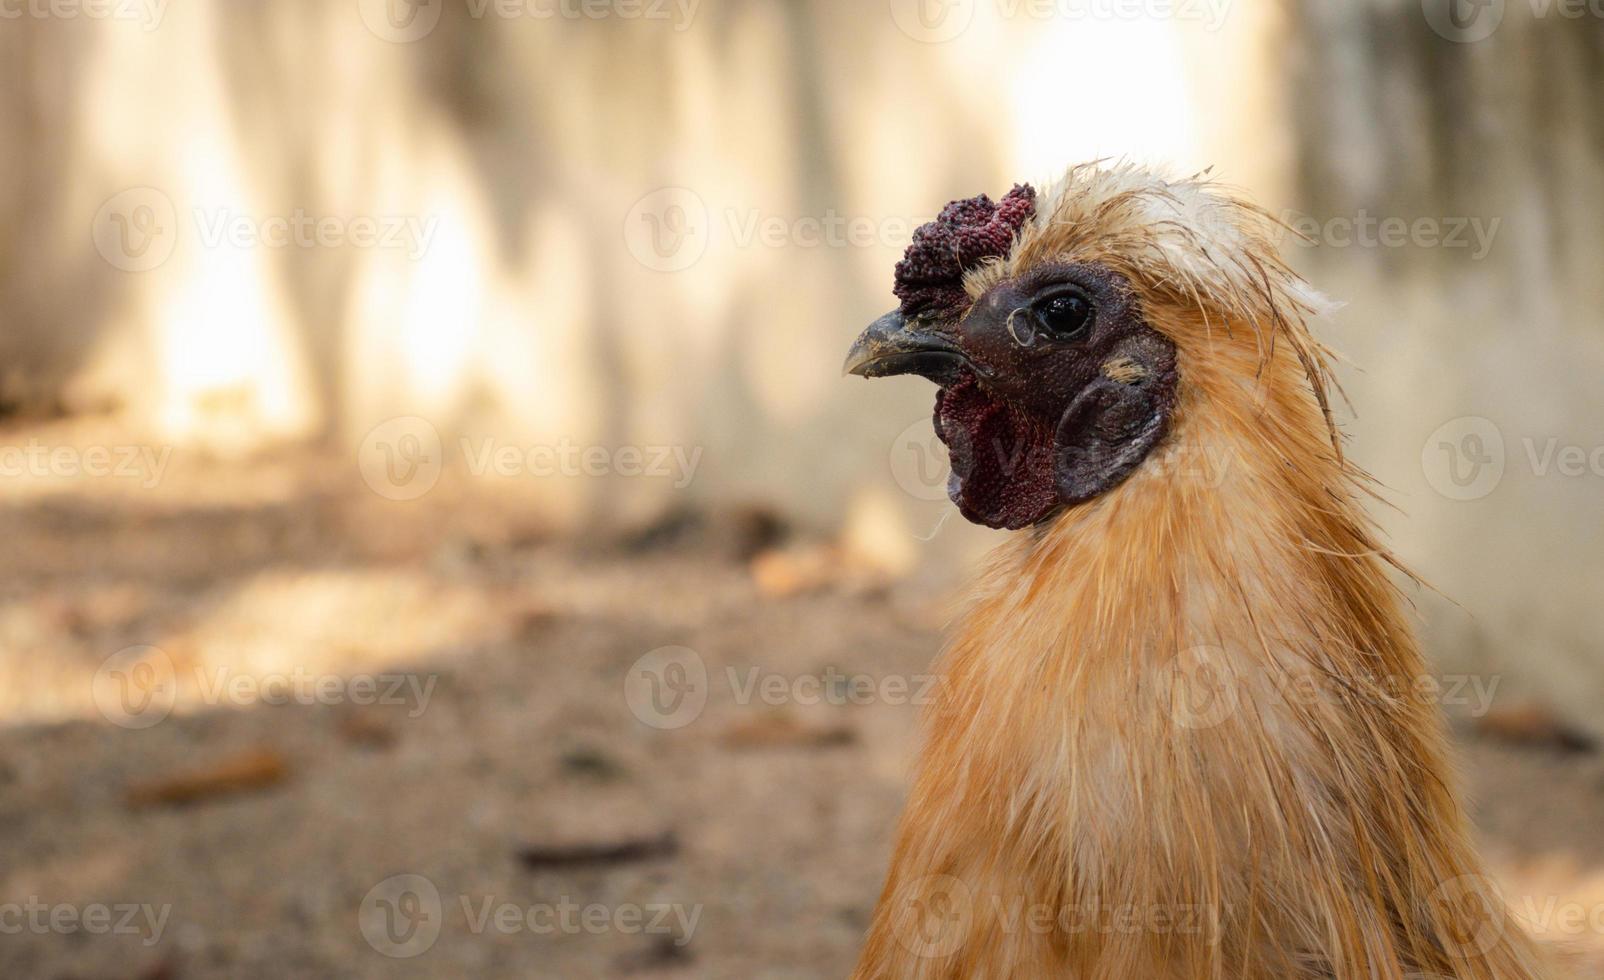 kyckling som står på en ladugård med ett hönshus. foto